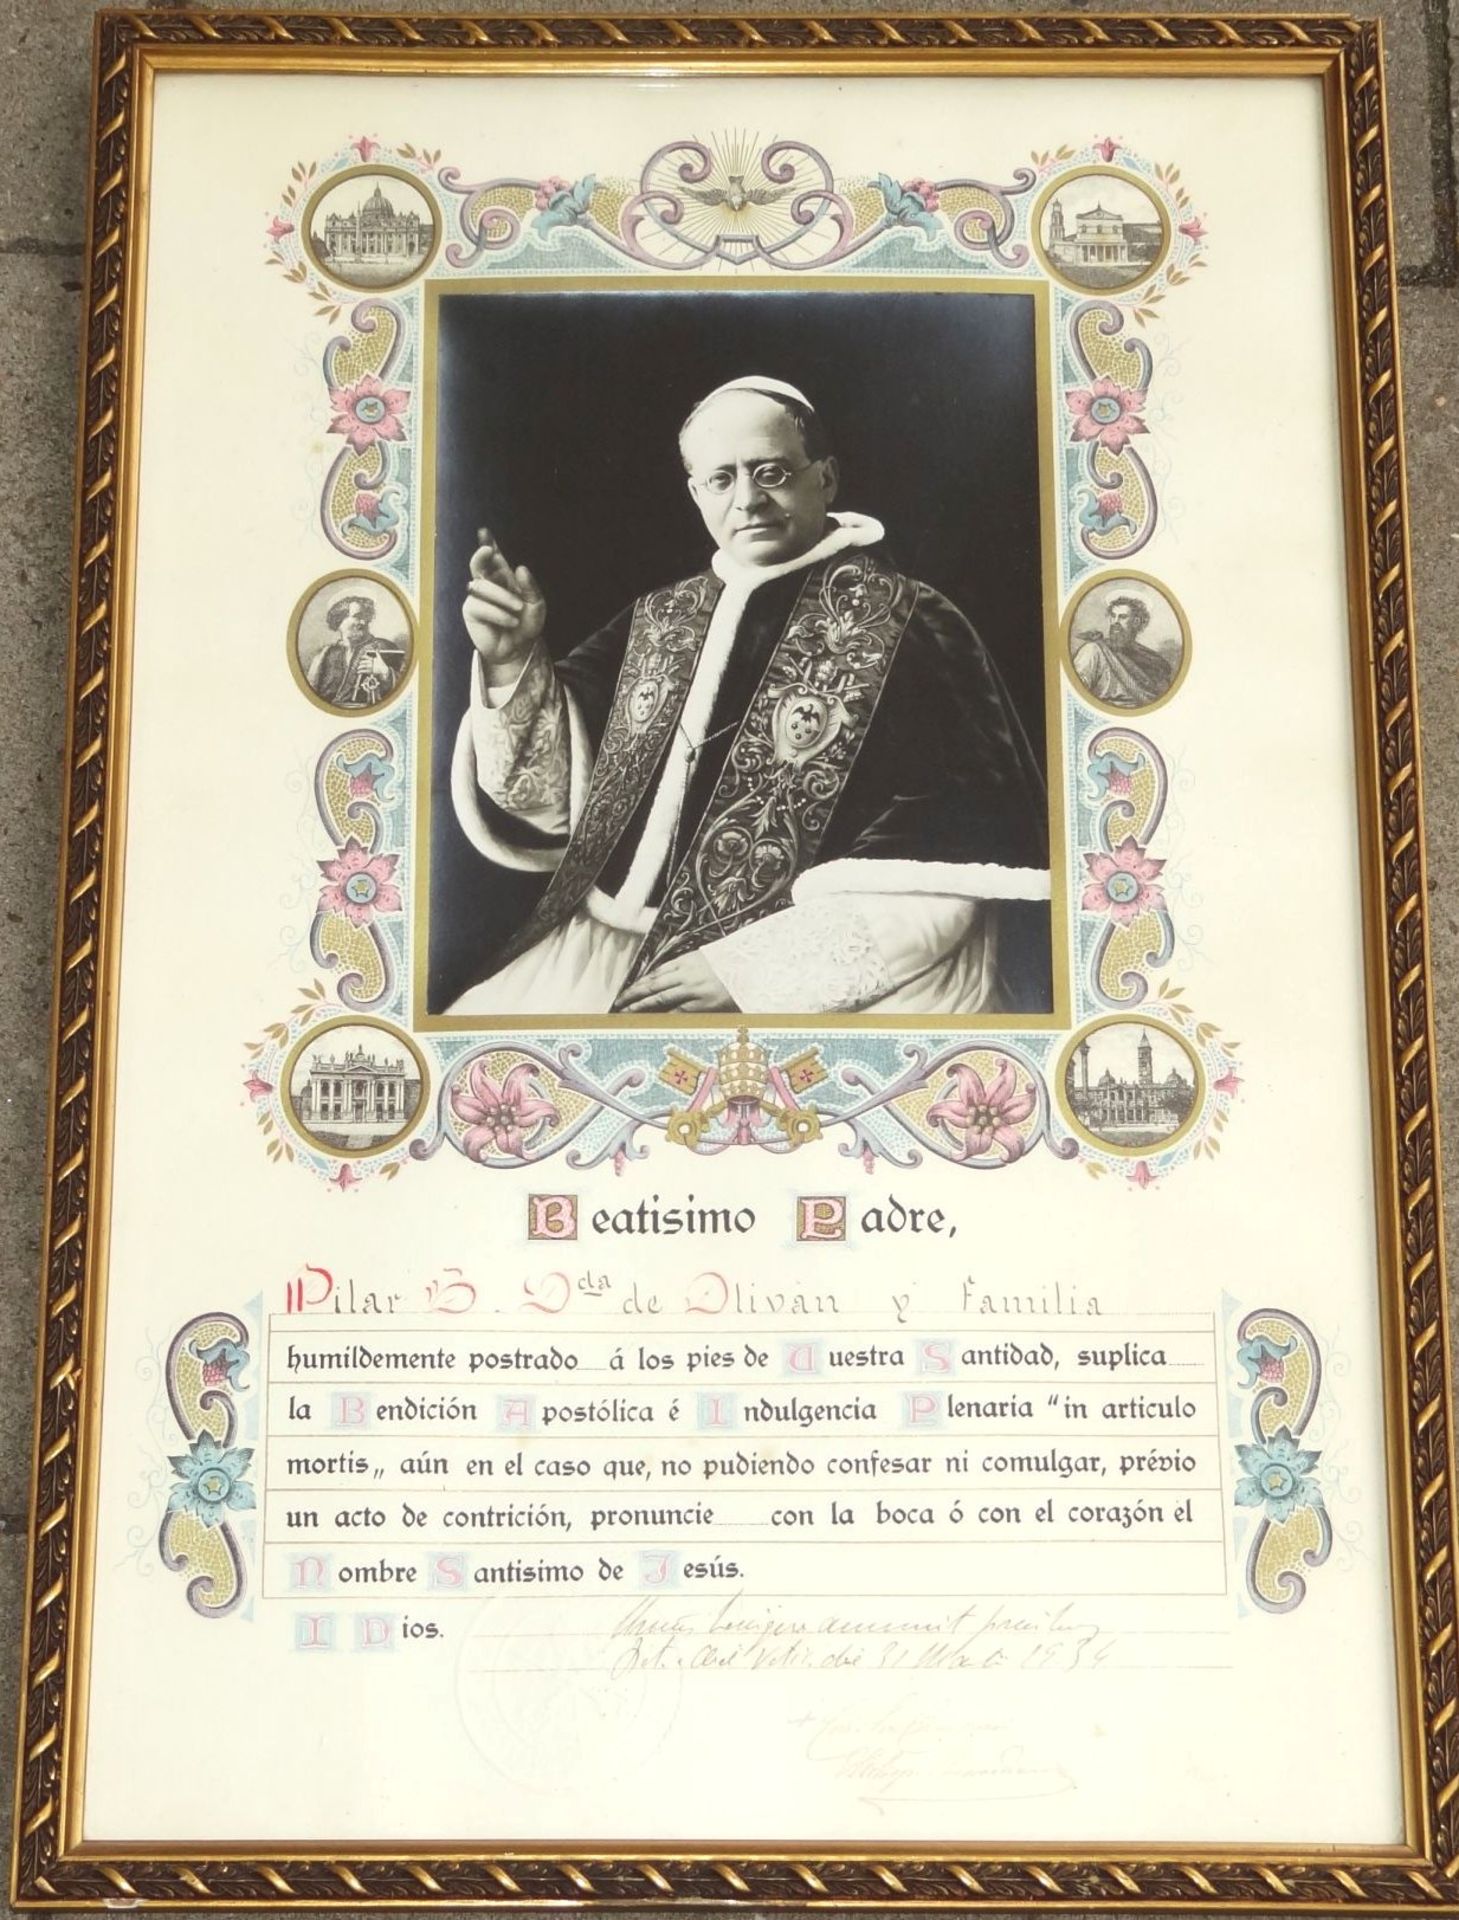 Urkunde mit Foto Papst Pius XII, 1934, mit Vatikan-Wappen und latein.. beschriftet, unleserl.